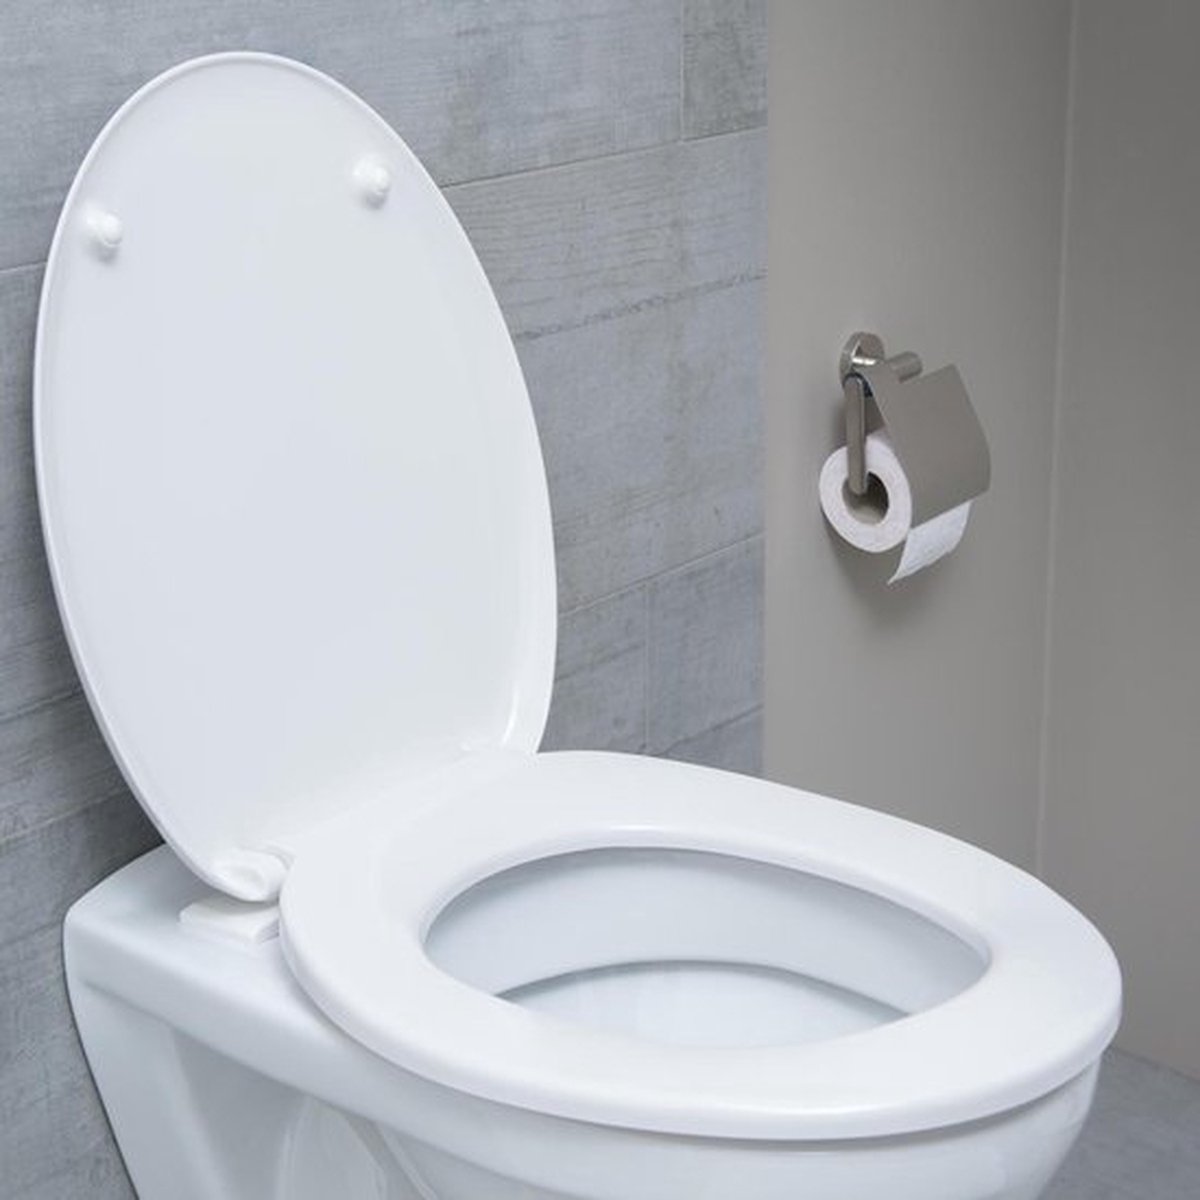 Rondelle pour abattant wc - Cdiscount